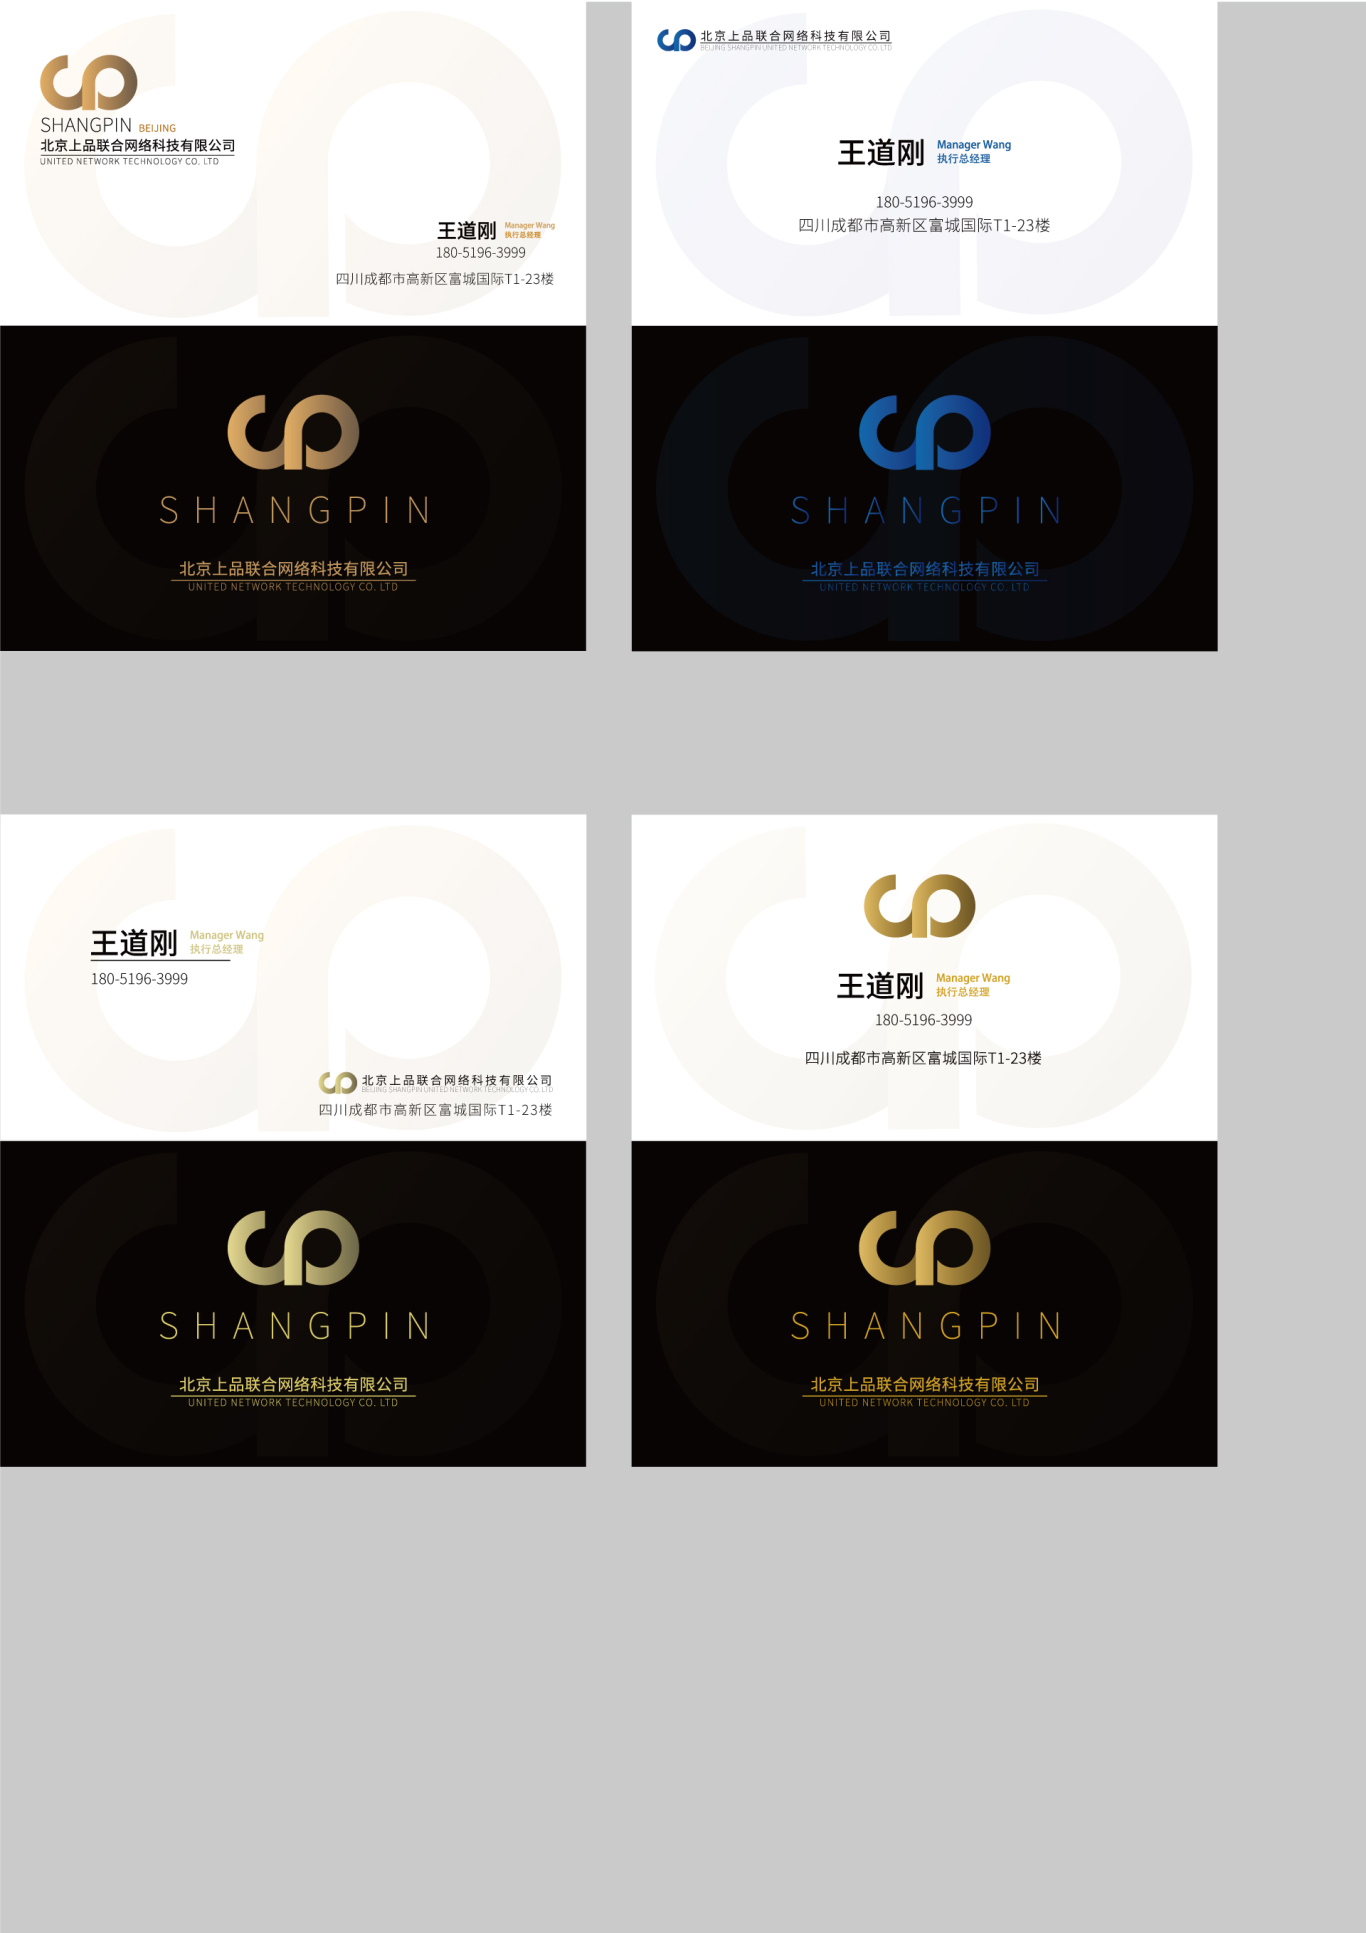 北京上品聯合網絡科技有限公司logo設計圖1